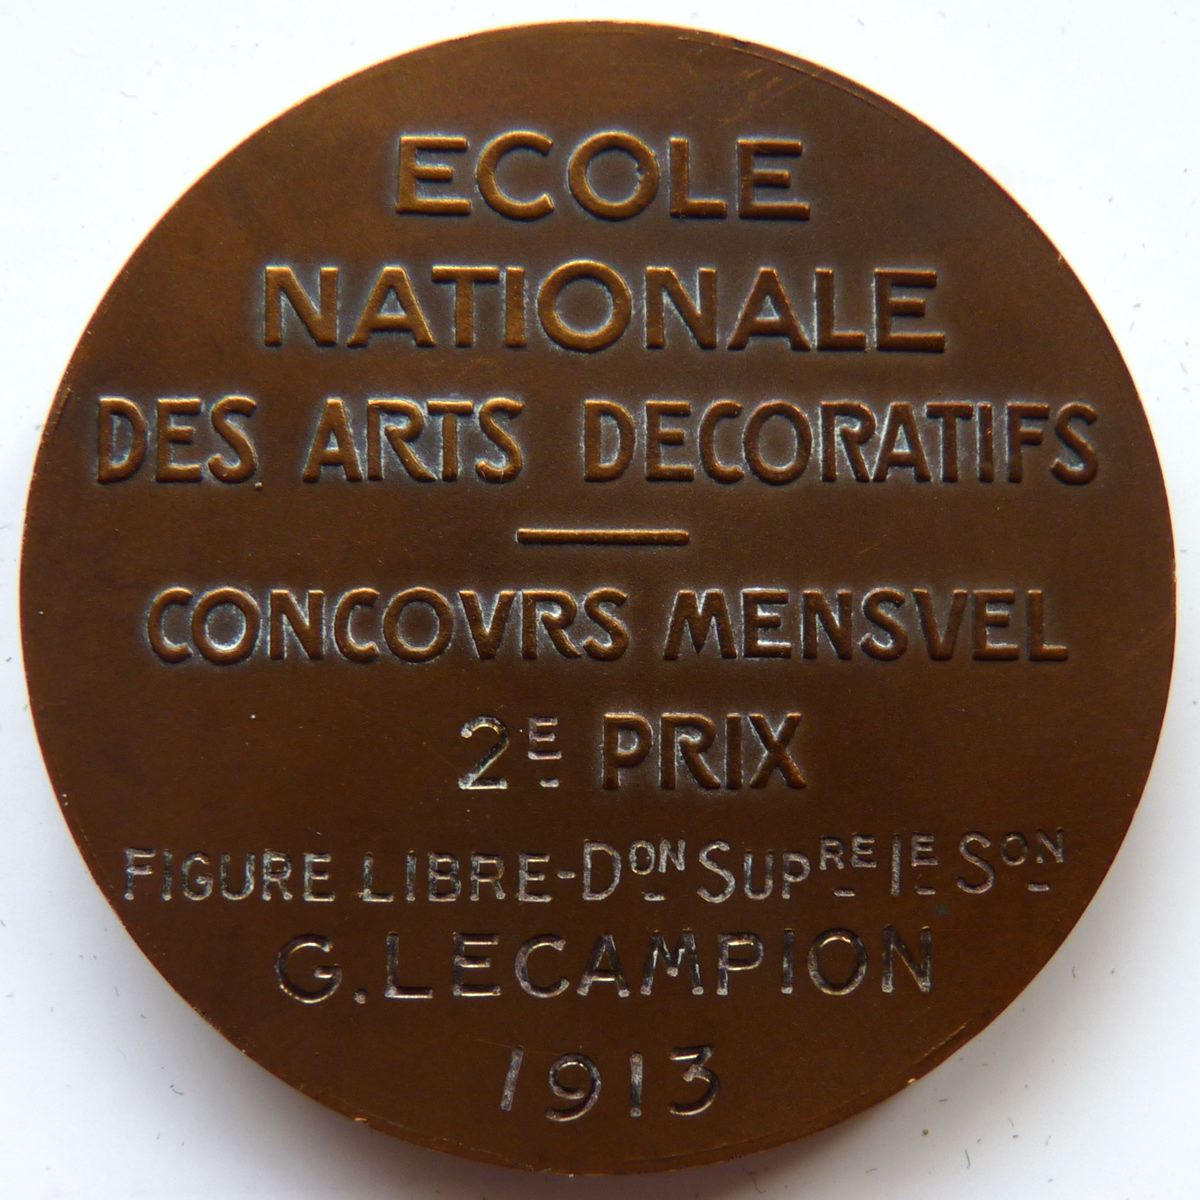 Ecole Nationale des Arts Décoratifs - Concours Mensuel 2e prix - figure libre - G. Lecampion 1913